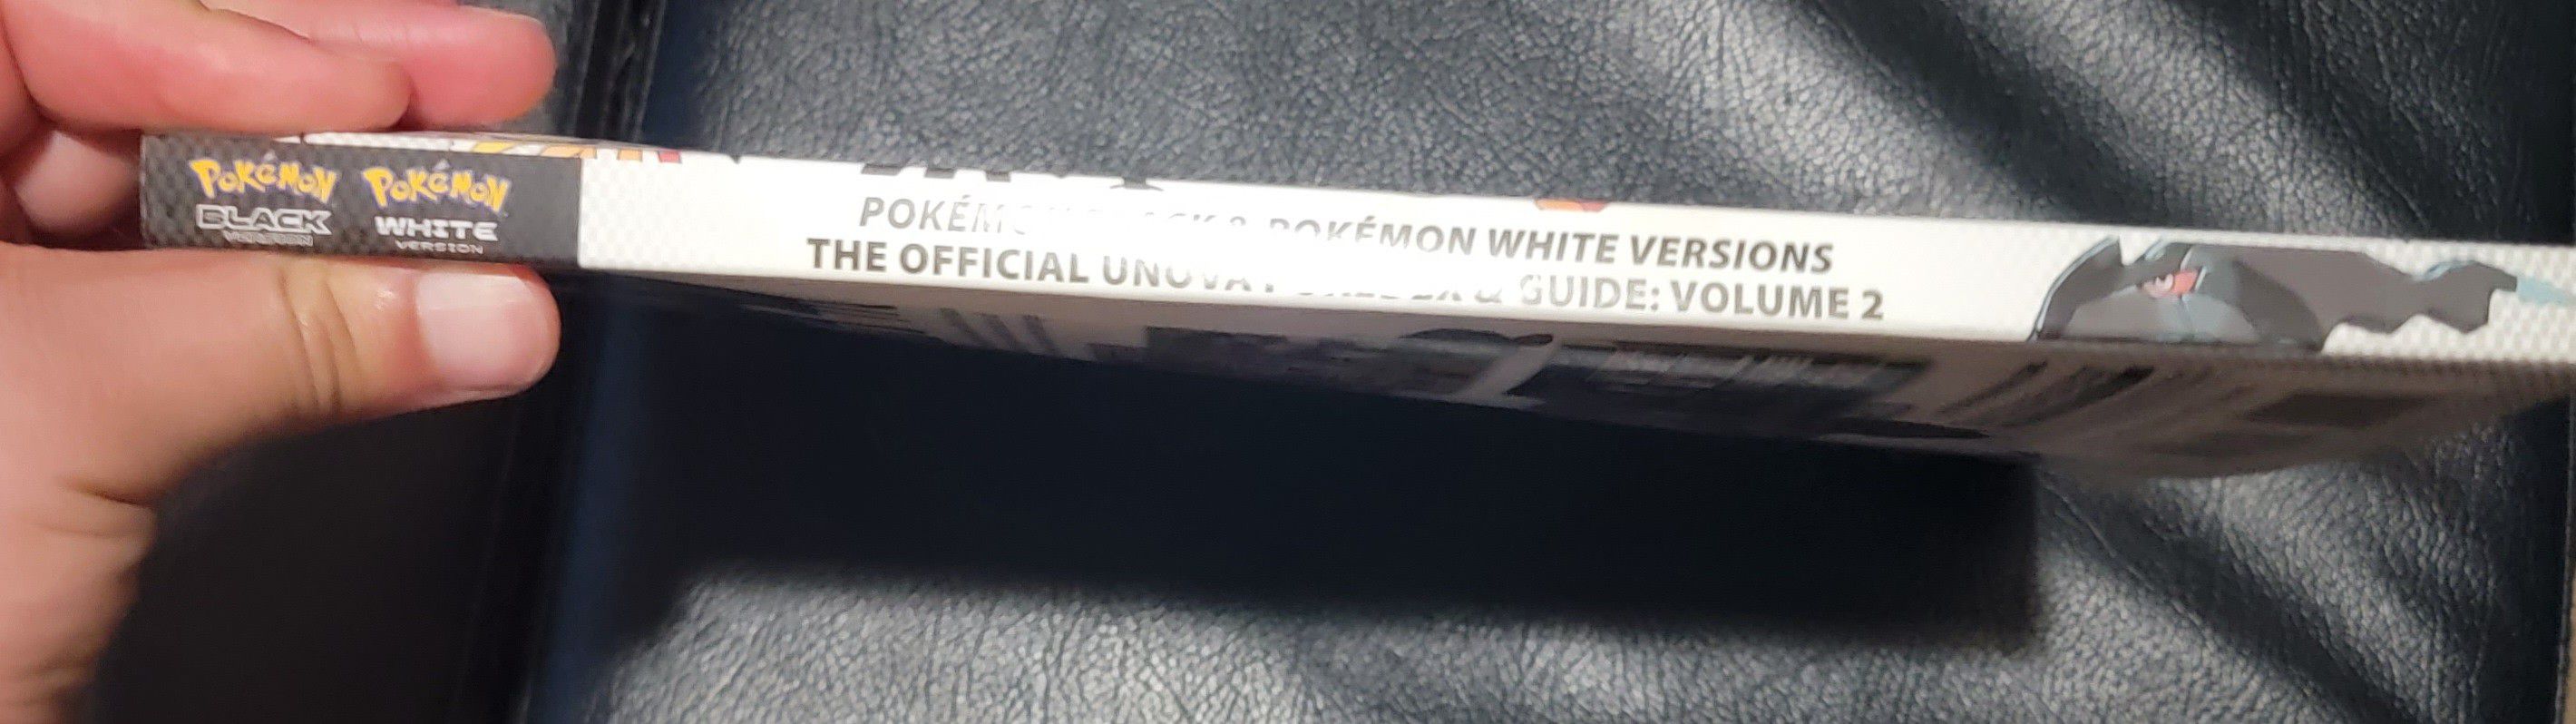 Official Unova Pokedex & Guide: Volume 2 Pokemon Black and White w